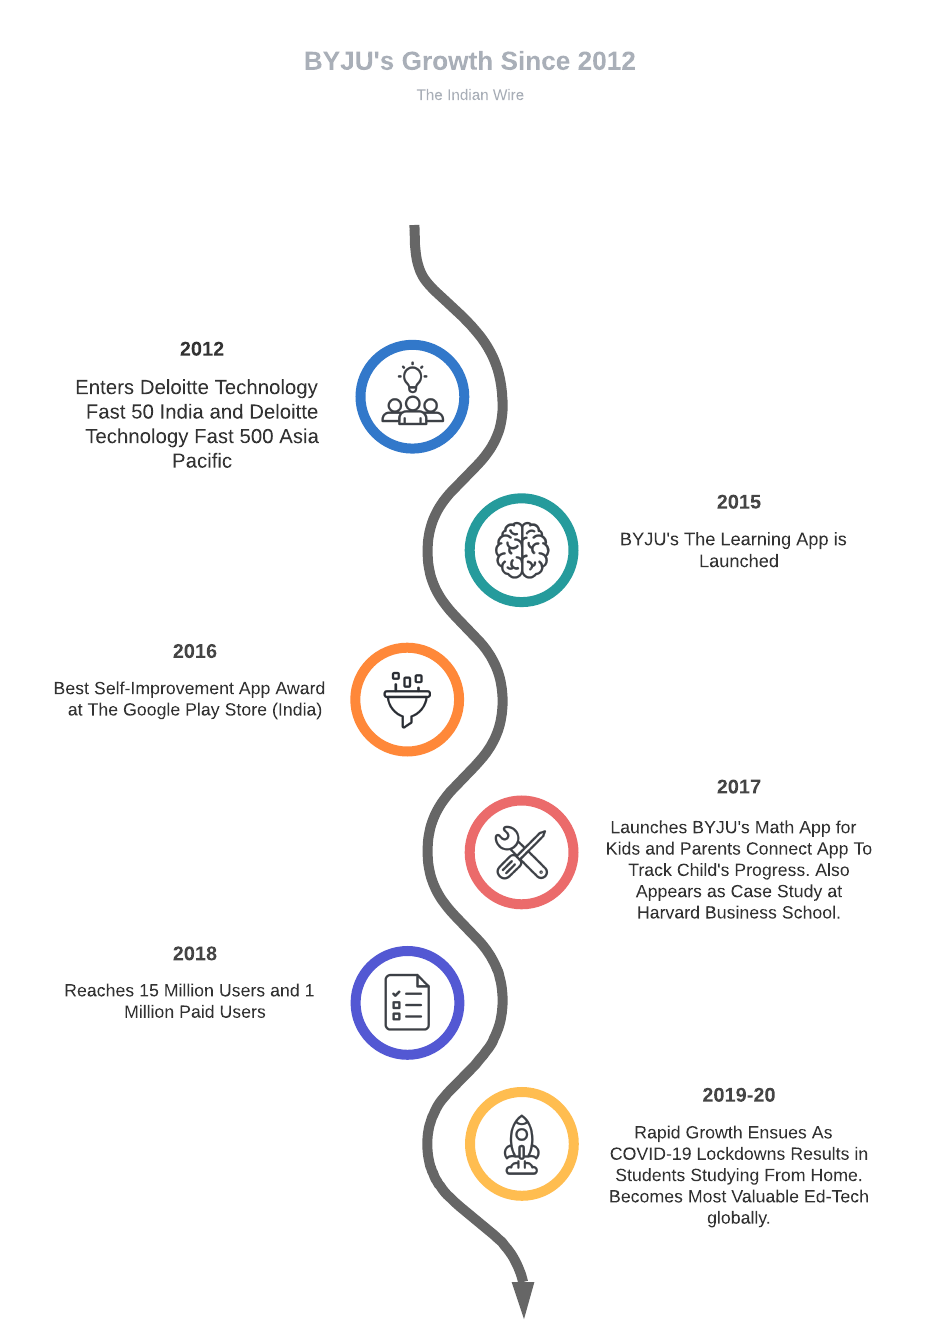 BYJU's Growth Timeline